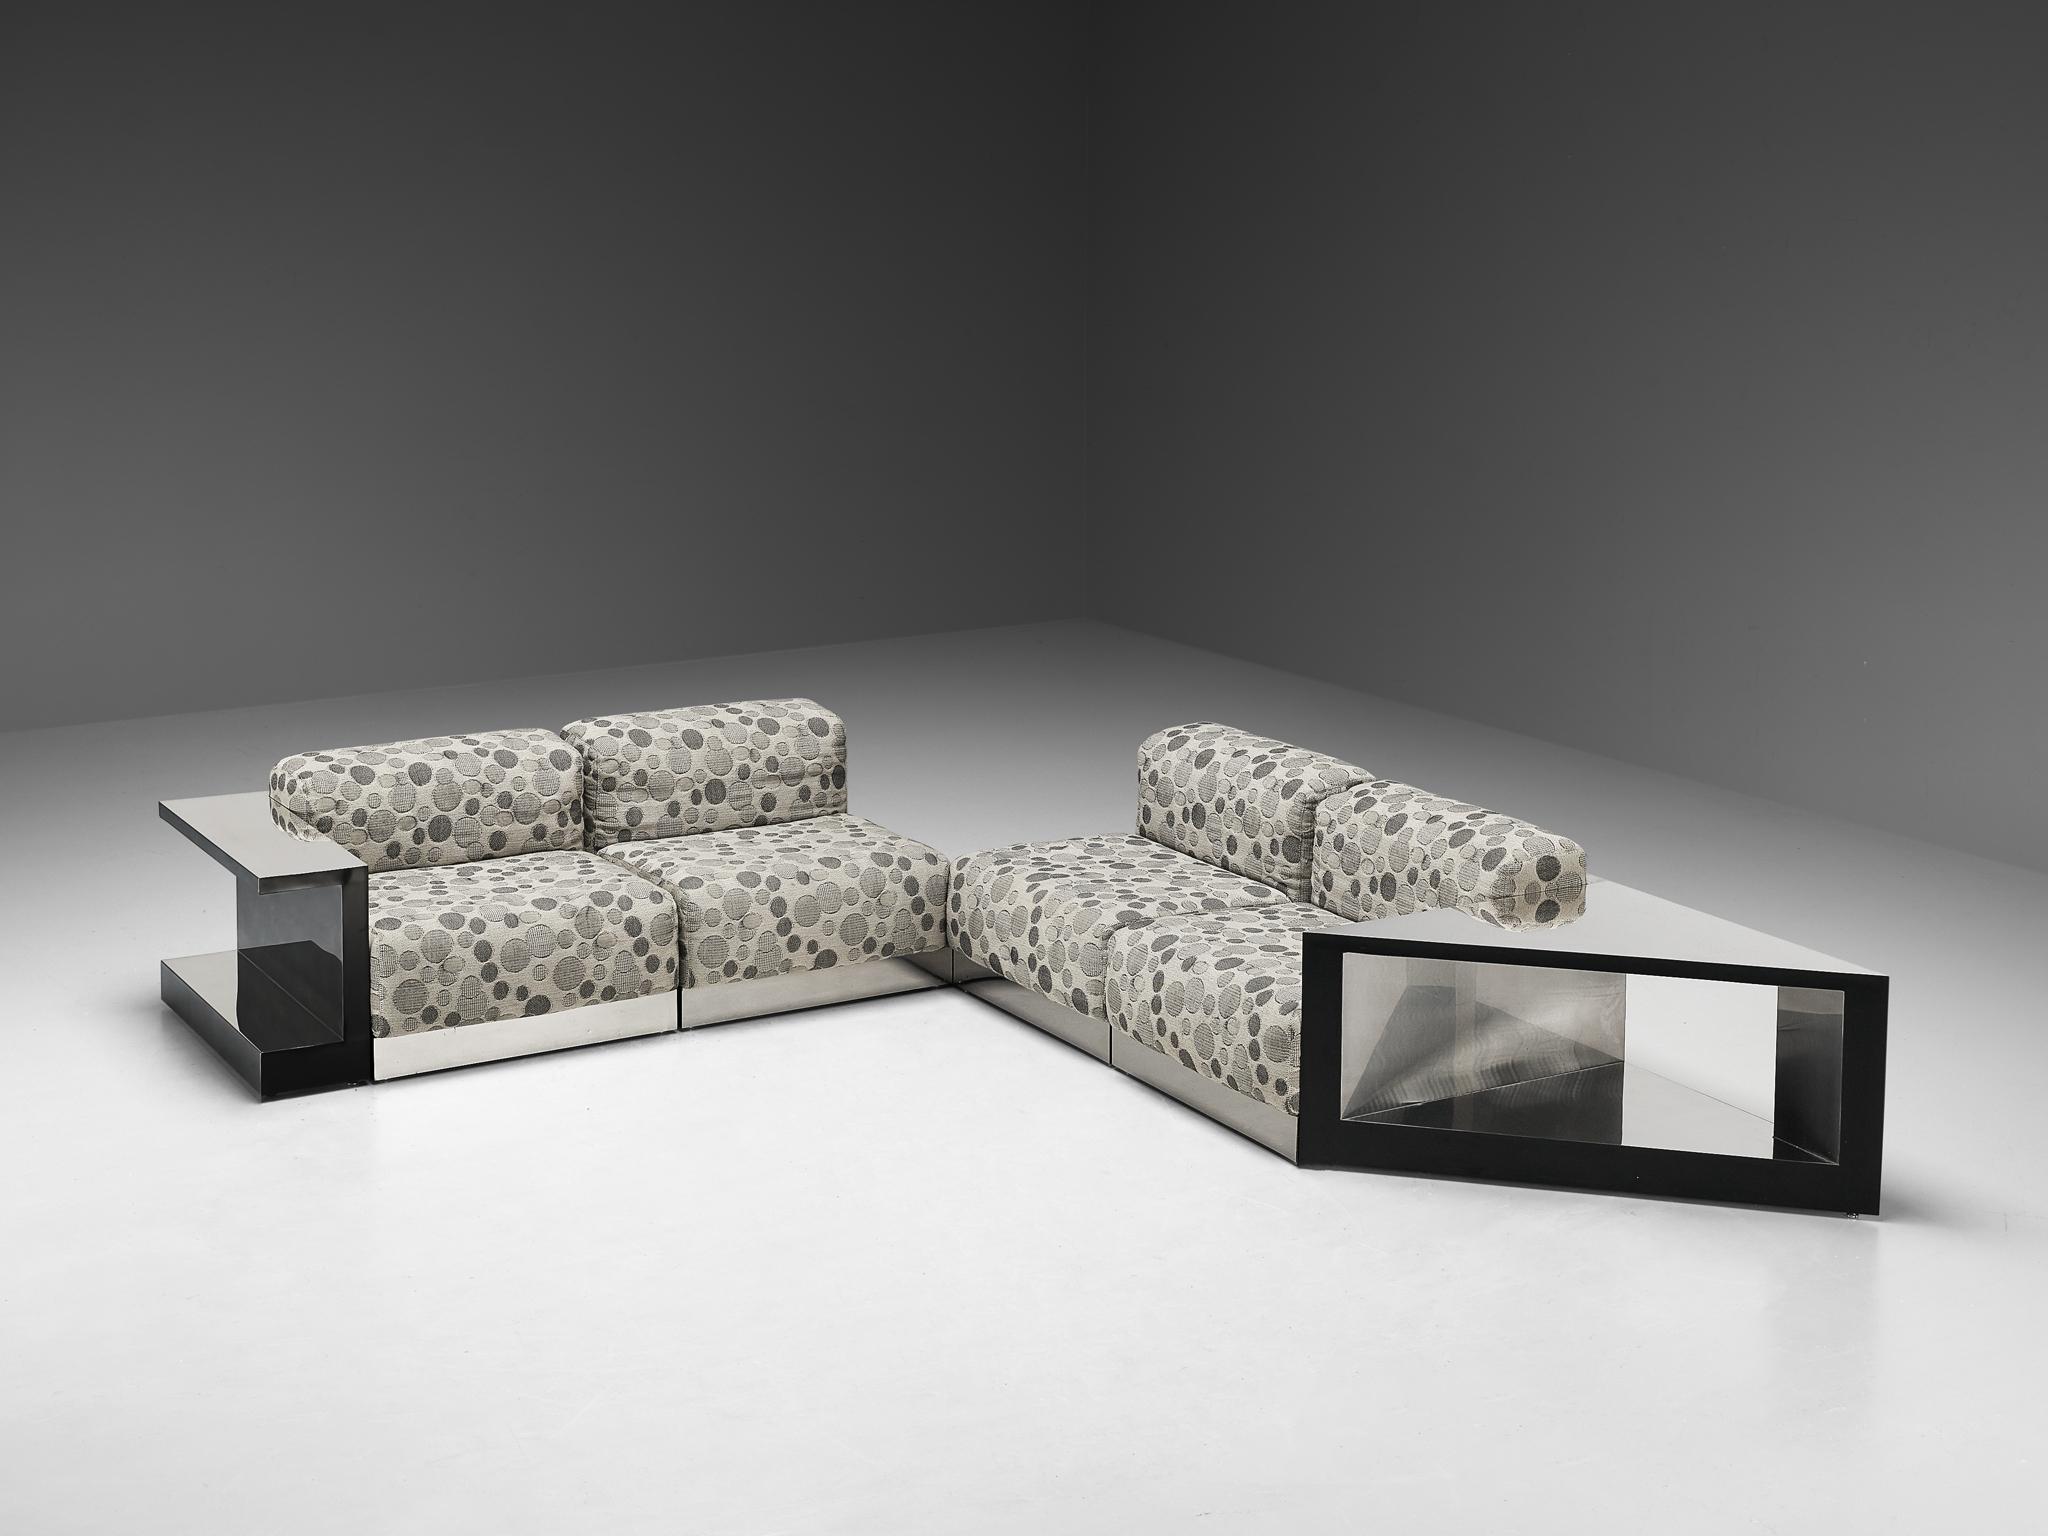 Modulares Sofa, Stoff, Chrom, Metall, Italien, 1970er Jahre

Schönes italienisches Sektionssofa mit exzentrischer Stoffwahl. Dieses atemberaubende Stück ist ein Spiegelbild des Designs der 1970er Jahre. Die Vielfalt der verschiedenen Elemente in